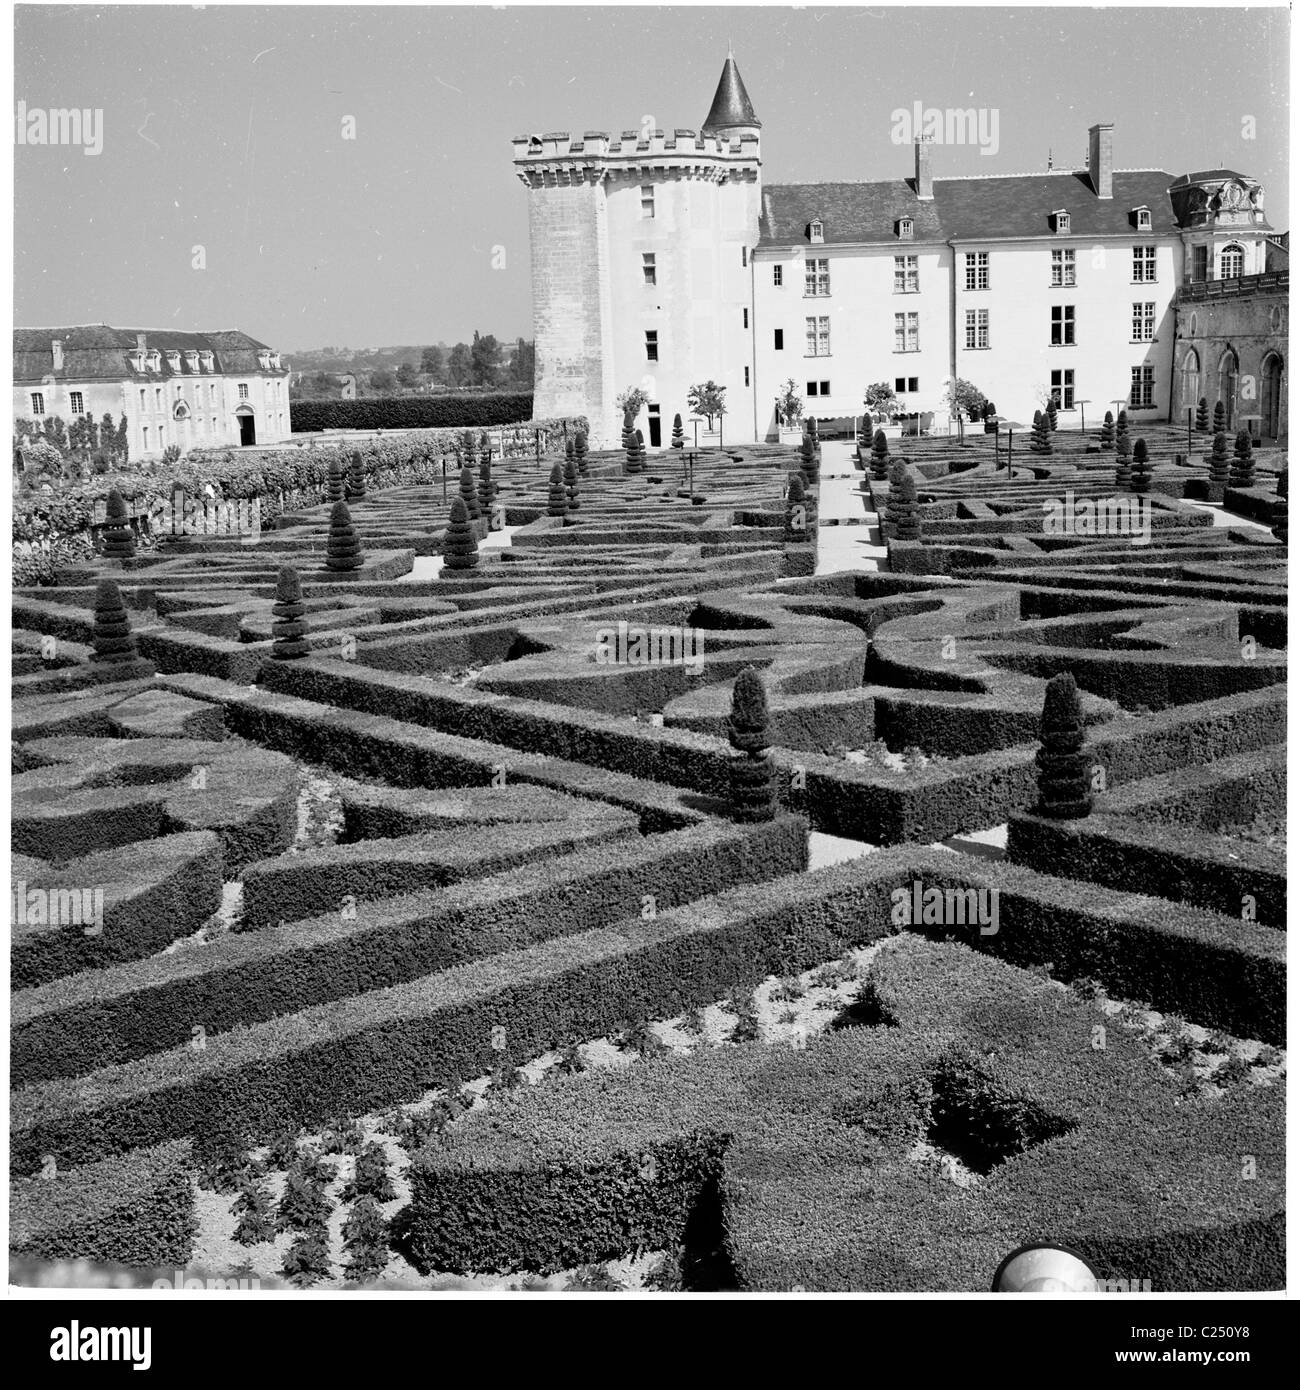 1950s, vue historique des jardins du Château de Villandry, France. Le château a été construit par la Loire pendant la Renaissance pour Jean le Breton. Banque D'Images